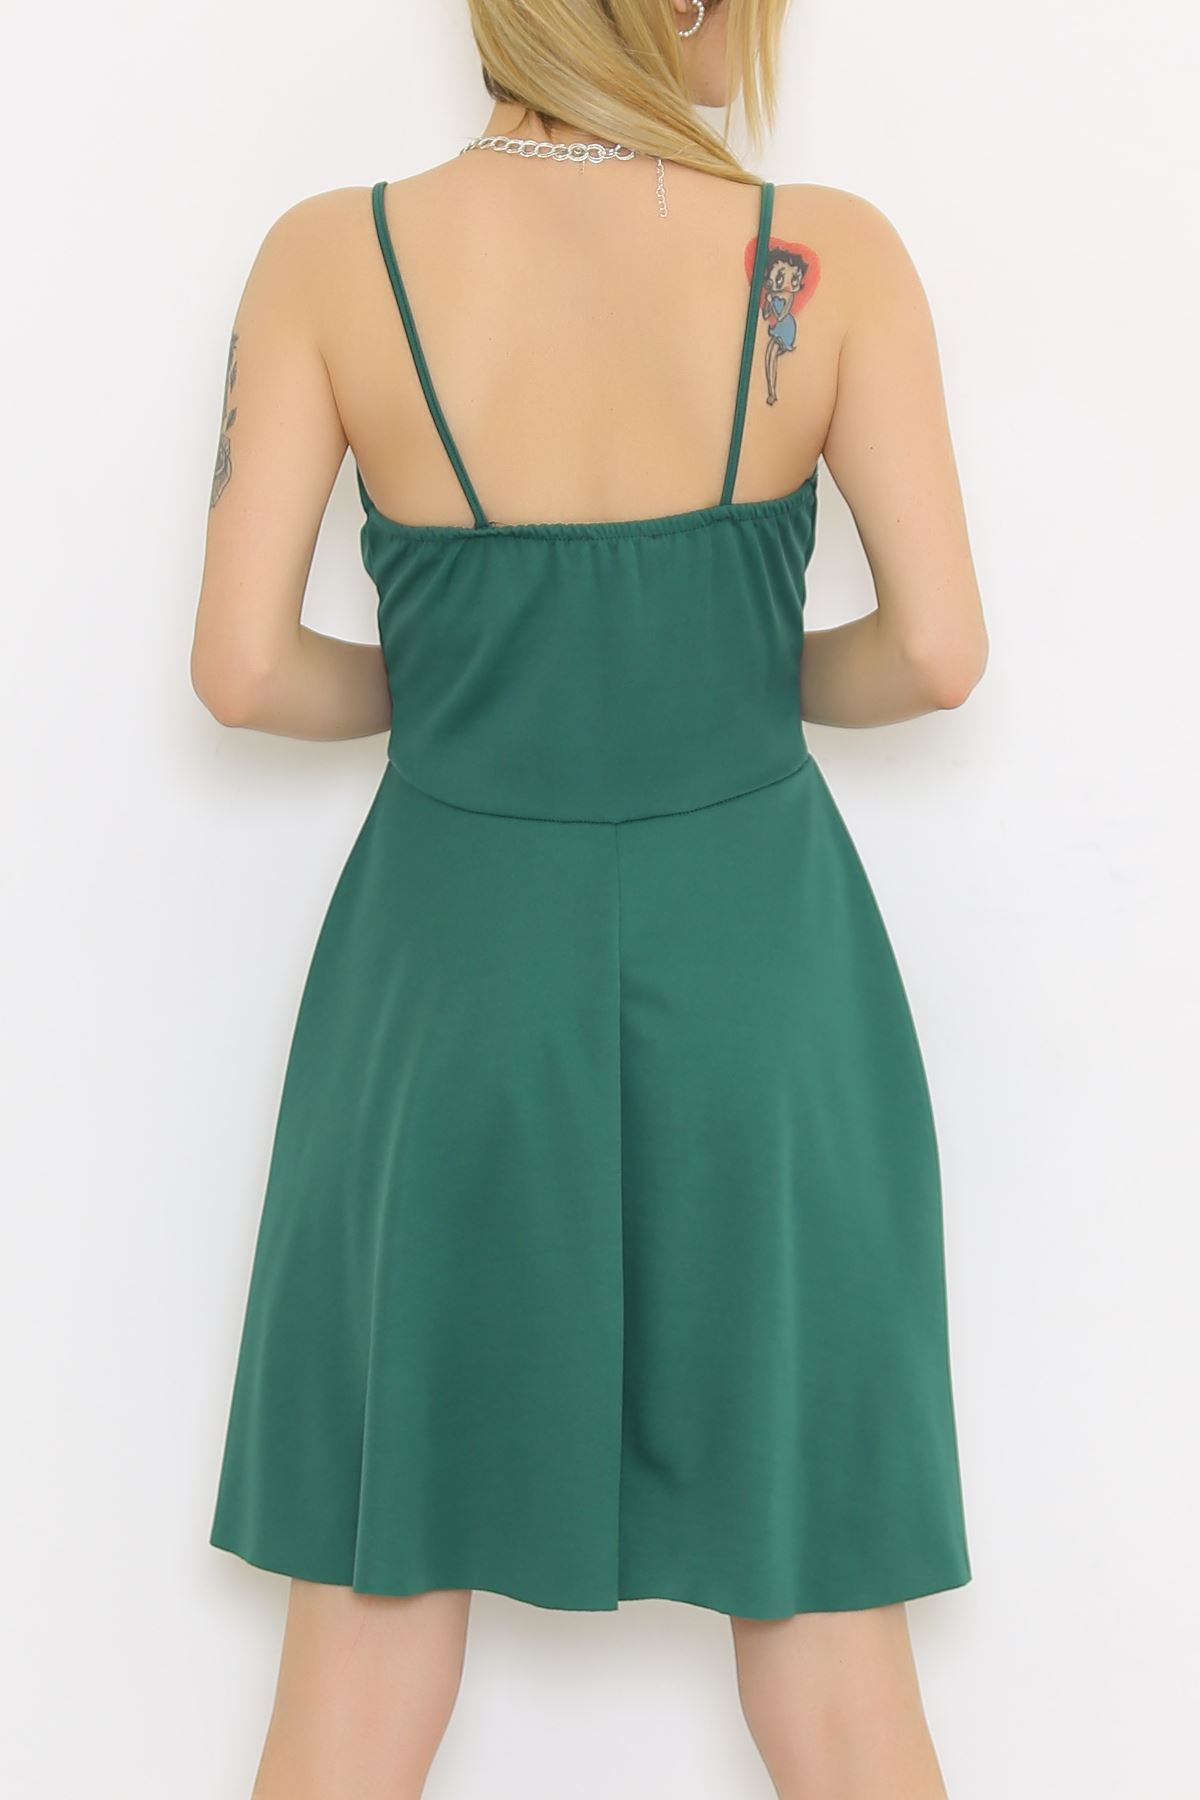 Askılı Elbise Yeşil - 581746.1592.